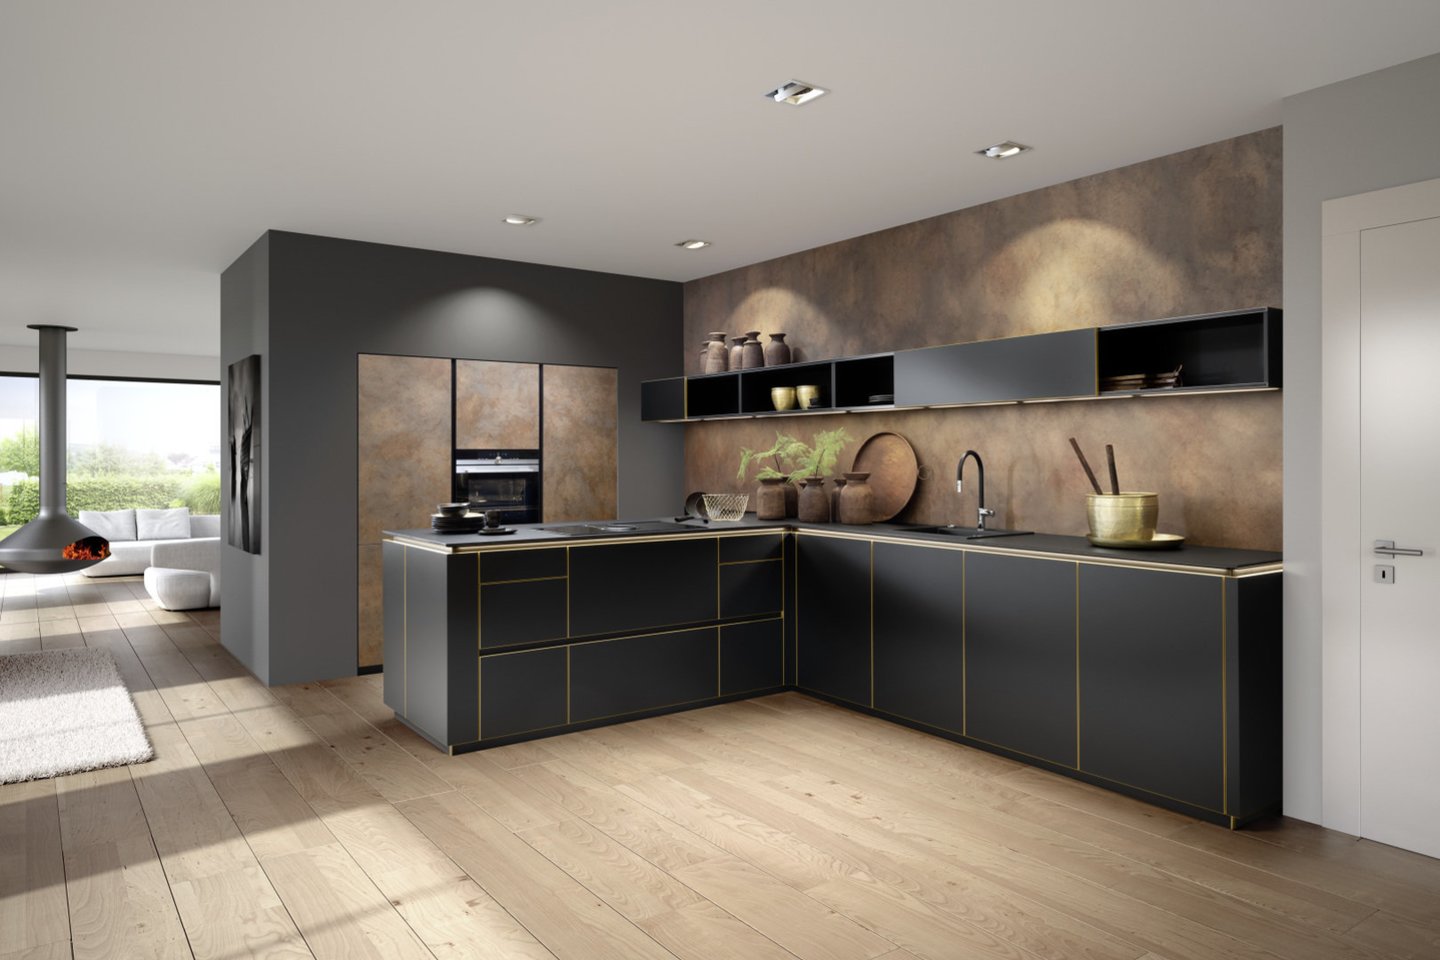 Projektuojant virtuvę vis svarbesni tampa nestandartiniai sprendimai bei siekis estetiką suderinti su ergonomija.<br>Virtuvė „Flair“ Salonas „Inhaus“. Gamintojo nuotr.